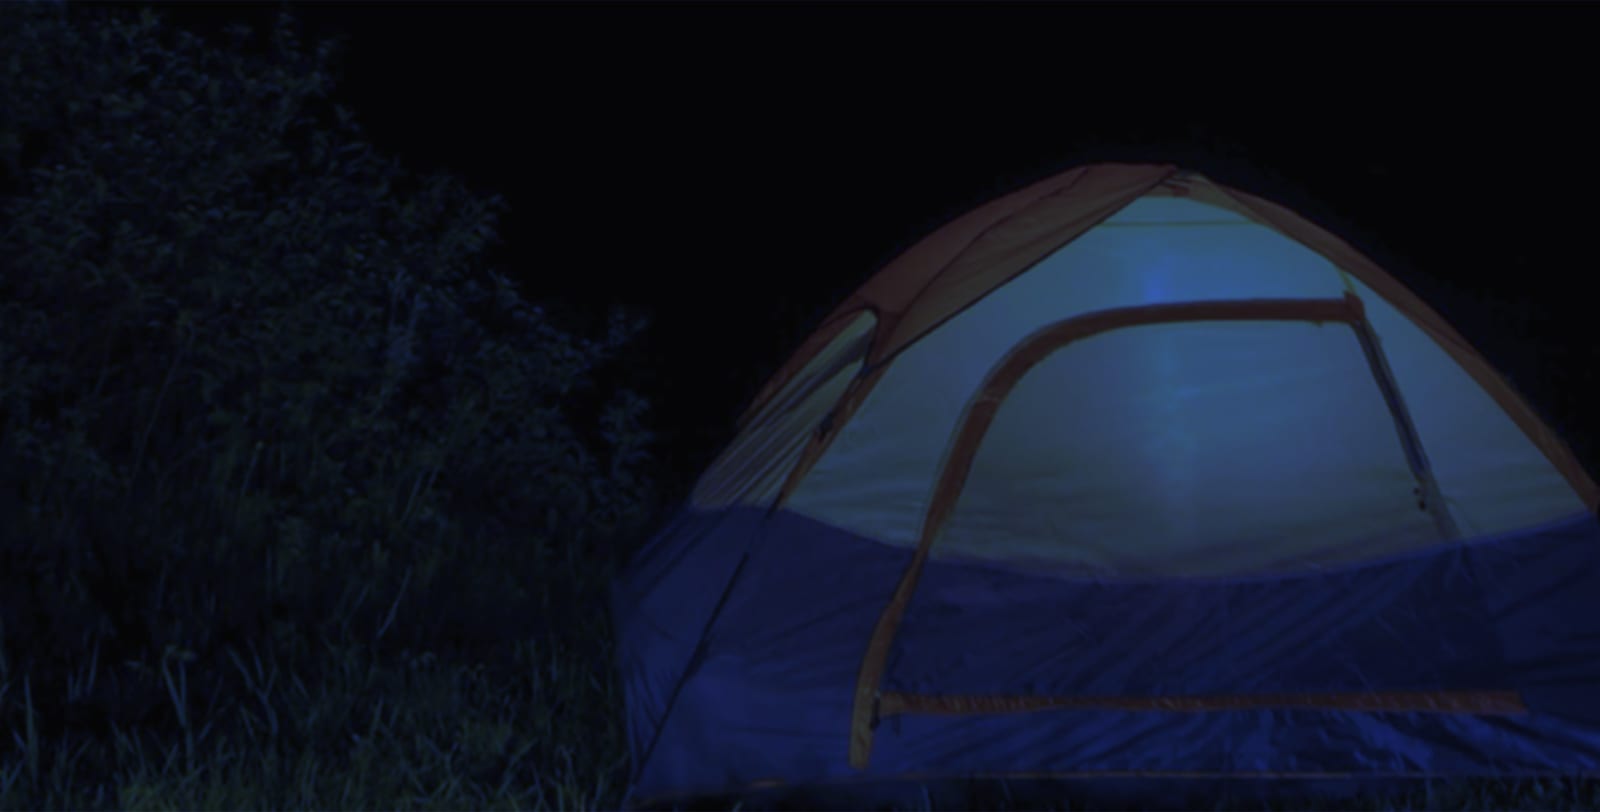 BaseCAMP illustration of a tent